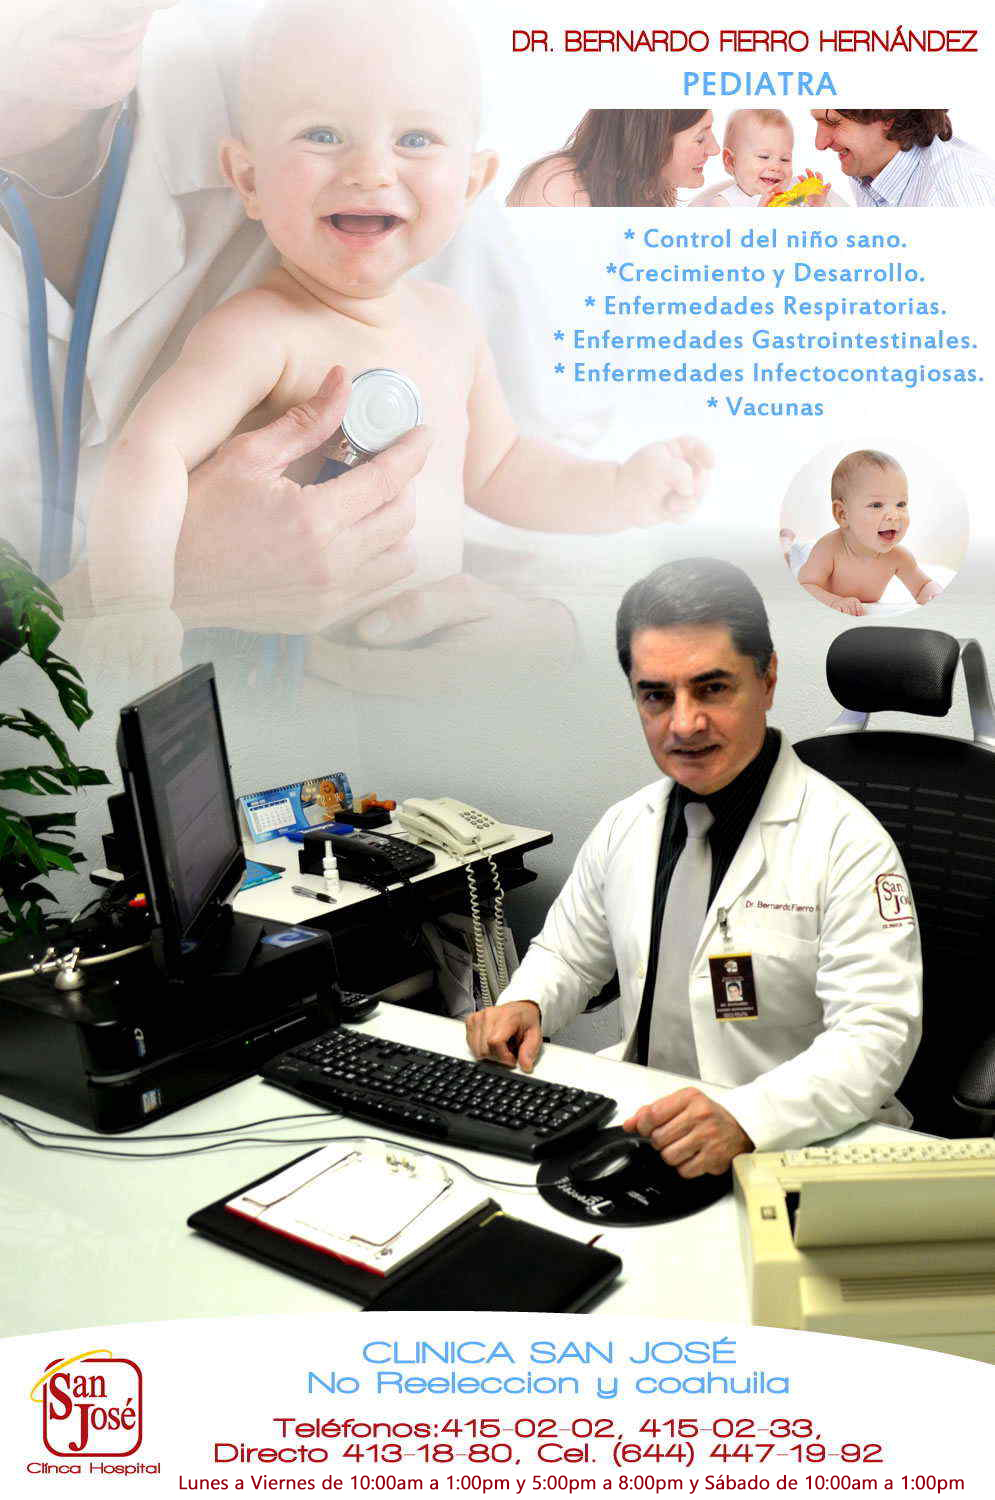 Dr. Bernardo Fierro Hernandez-Pediatra perinatólogo: * Control del niño sano. * Crecimiento y Desarrollo. * Enfermedades Respiratorias. * Enfermedades Gastrointestinales. * Enfermedades Infectocontagiosas. * Vacunas                     